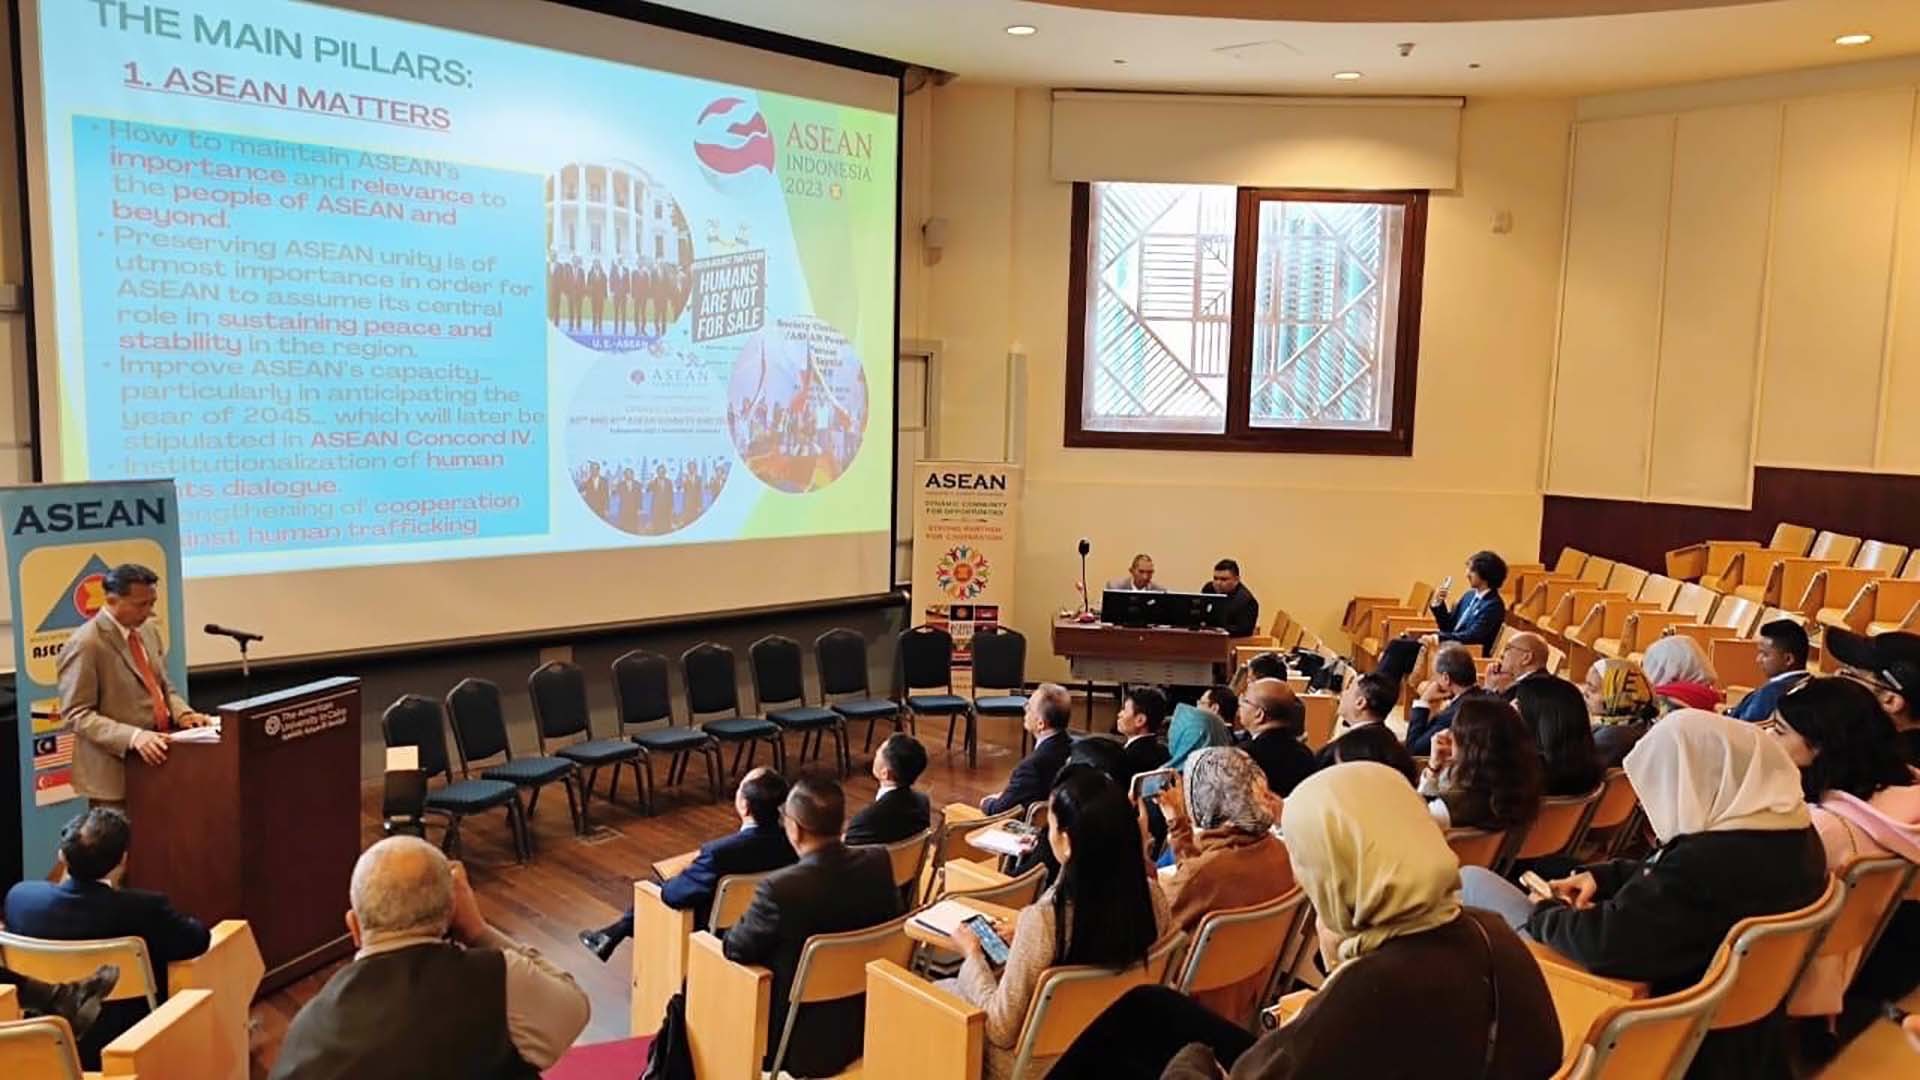 Buổi tọa đàm đã cung cấp thông tin về ASEAN đến các bạn trẻ Ai Cập, nâng cao hình ảnh của các nước ASEAN trong mắt công chúng Ai Cập.